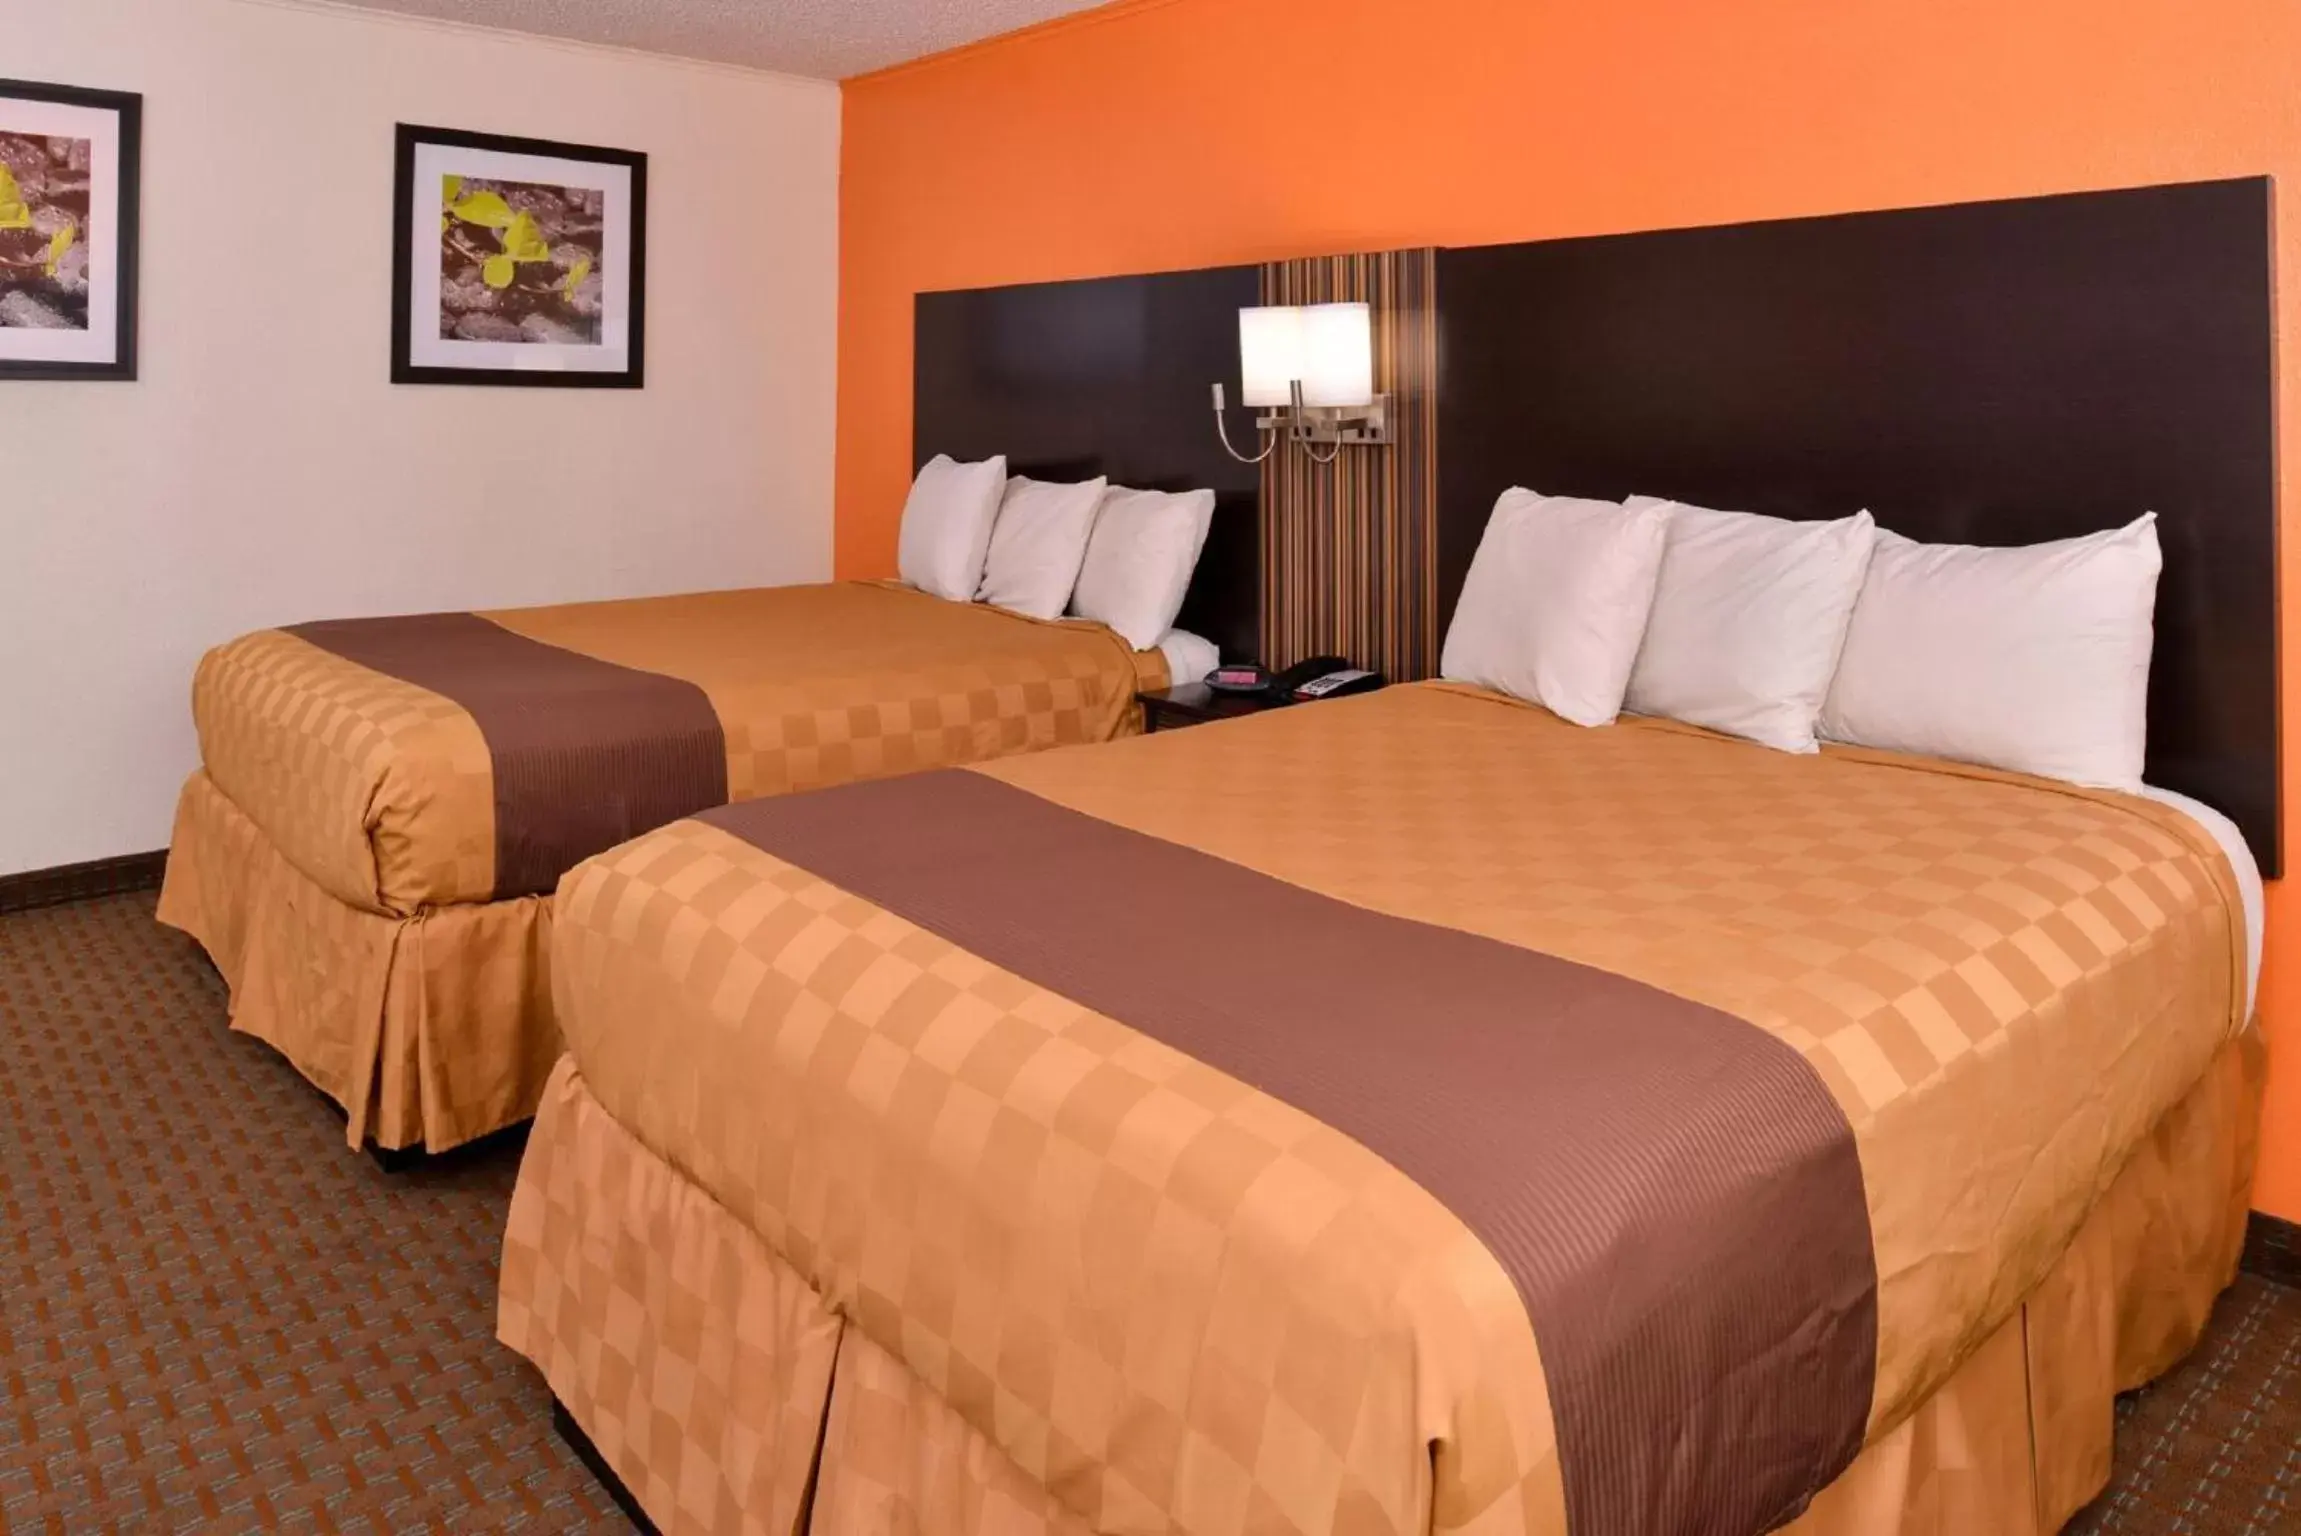 Bedroom, Bed in Americas Best Value Inn Ponca City